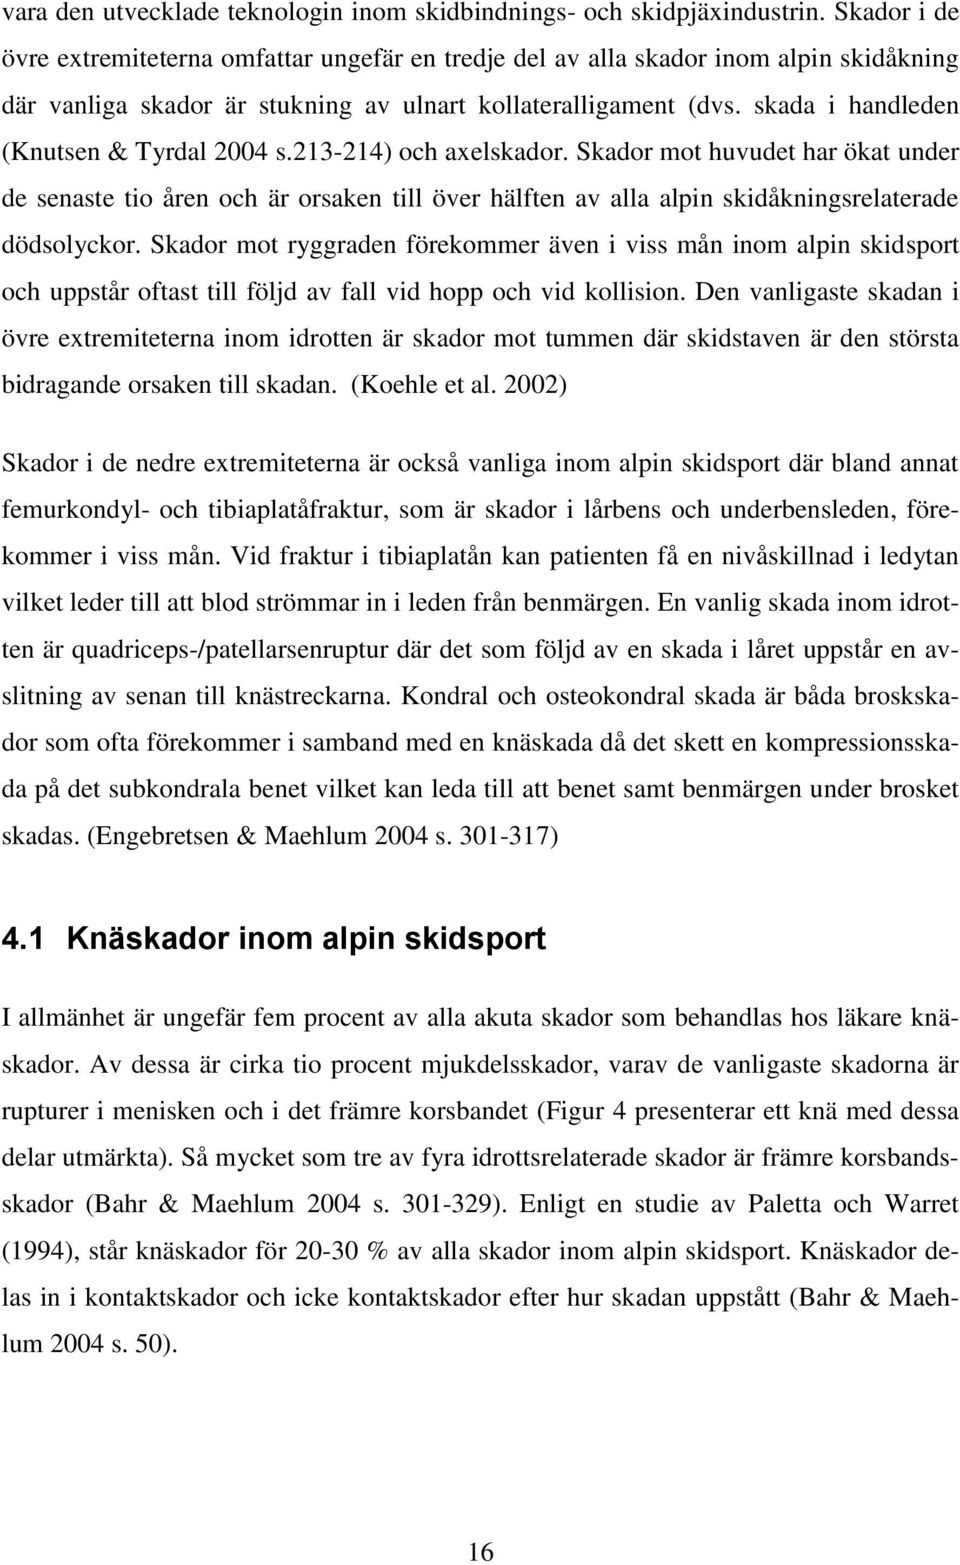 skada i handleden (Knutsen & Tyrdal 2004 s.213-214) och axelskador.